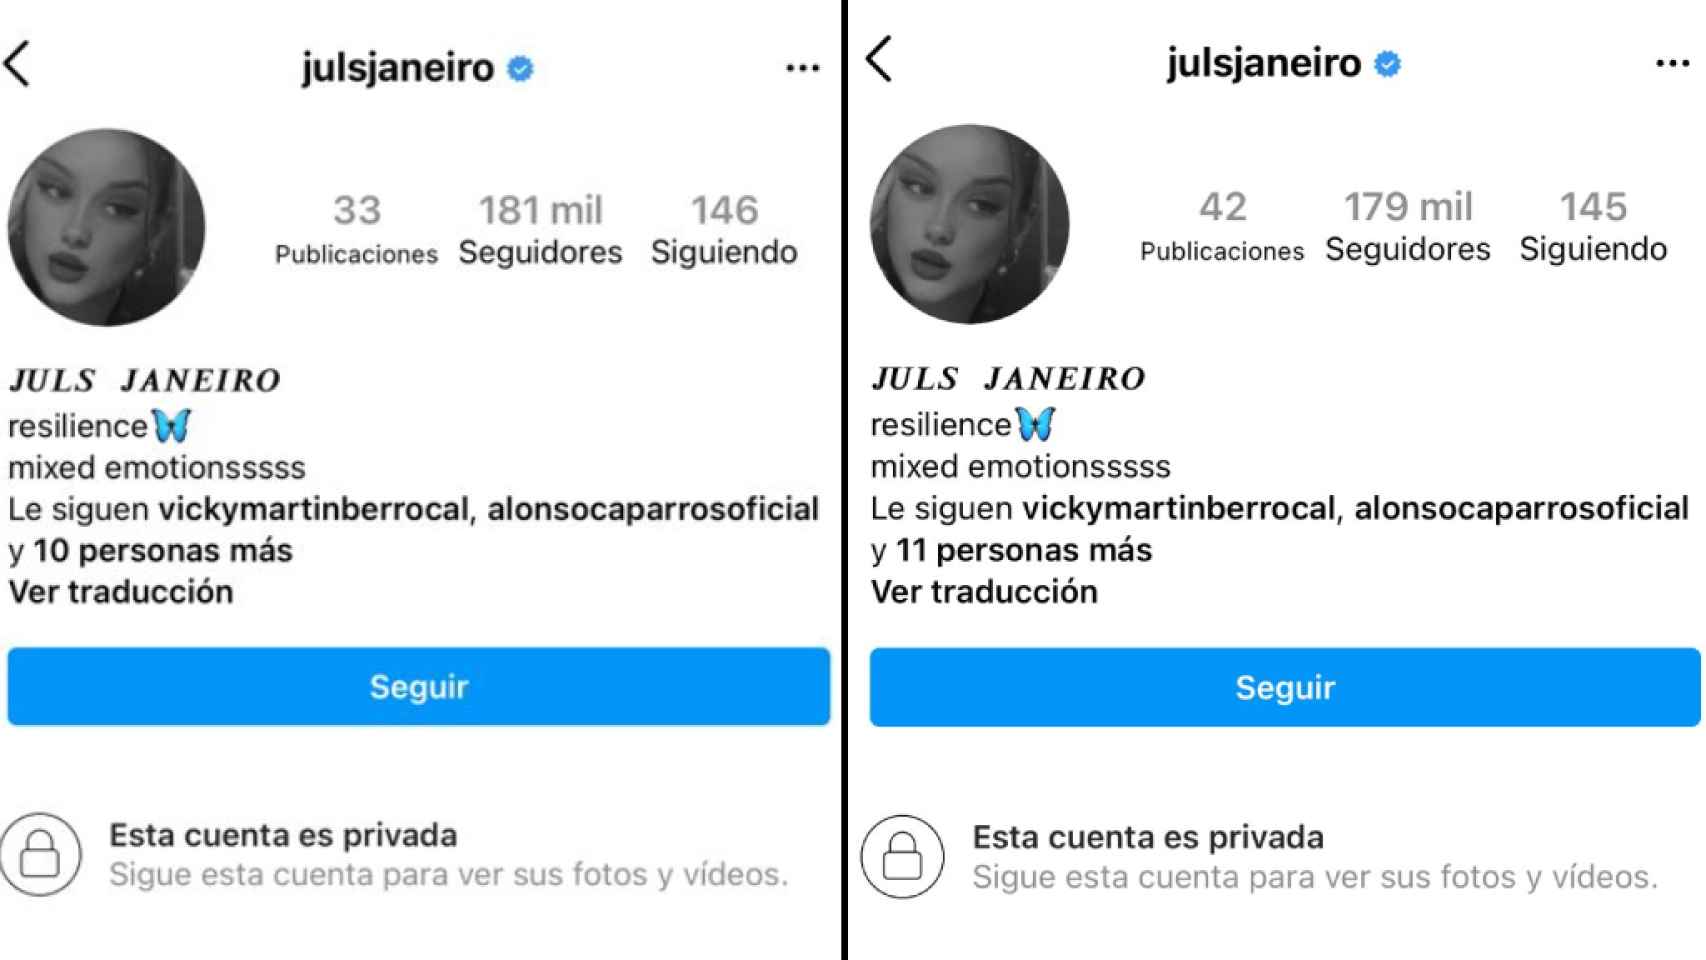 Los cambios que ha experimentado la cuenta de Instagram de Julia Janeiro.